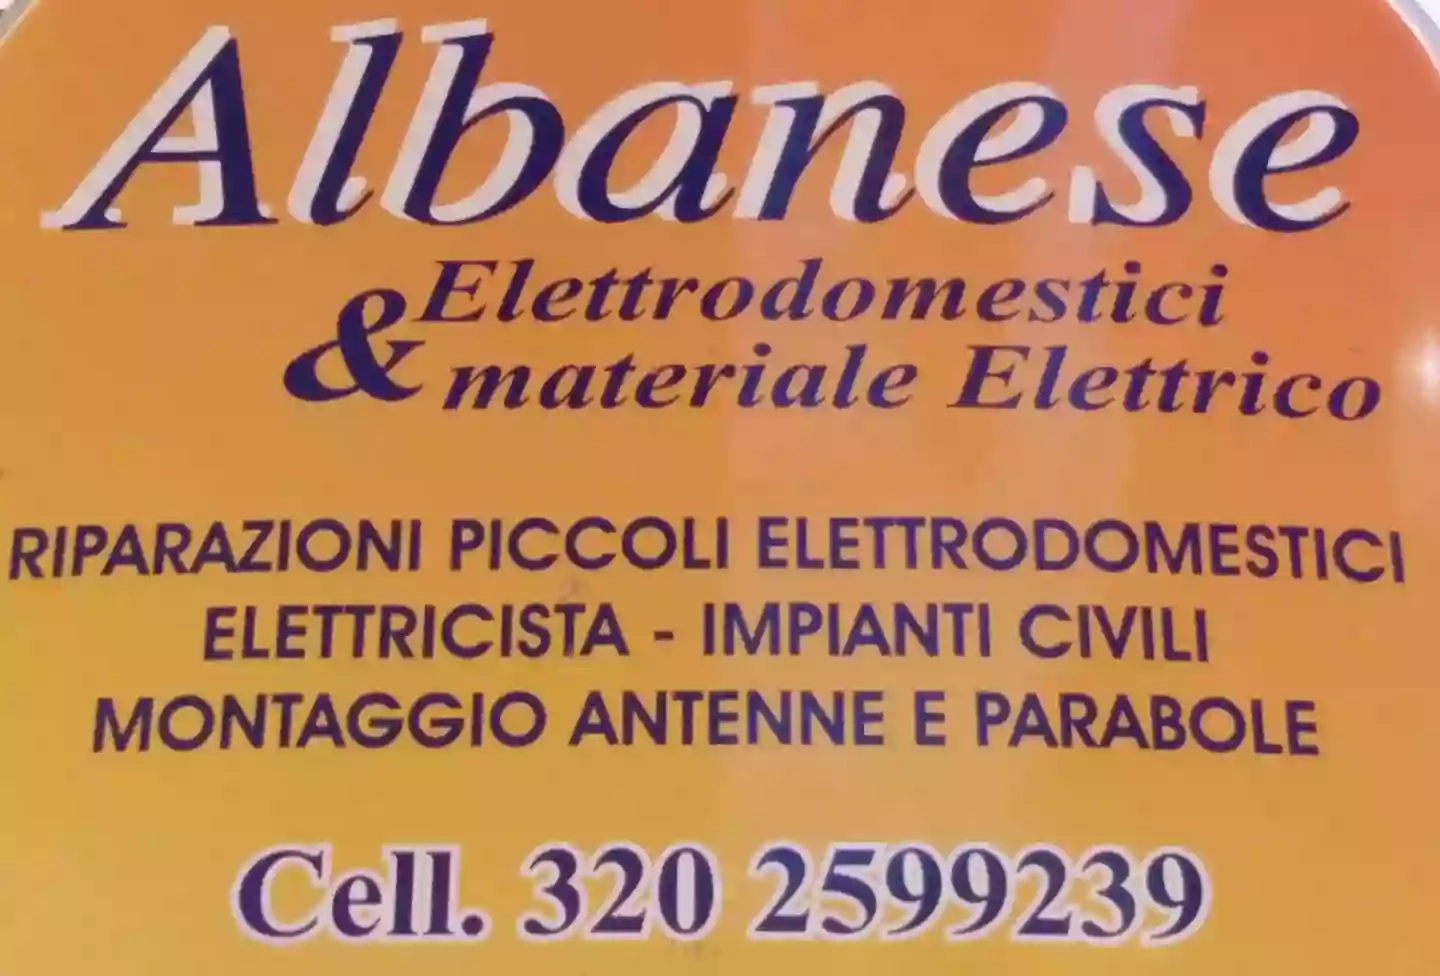 Albanese Elettrodomestici & Materiali Elettrici